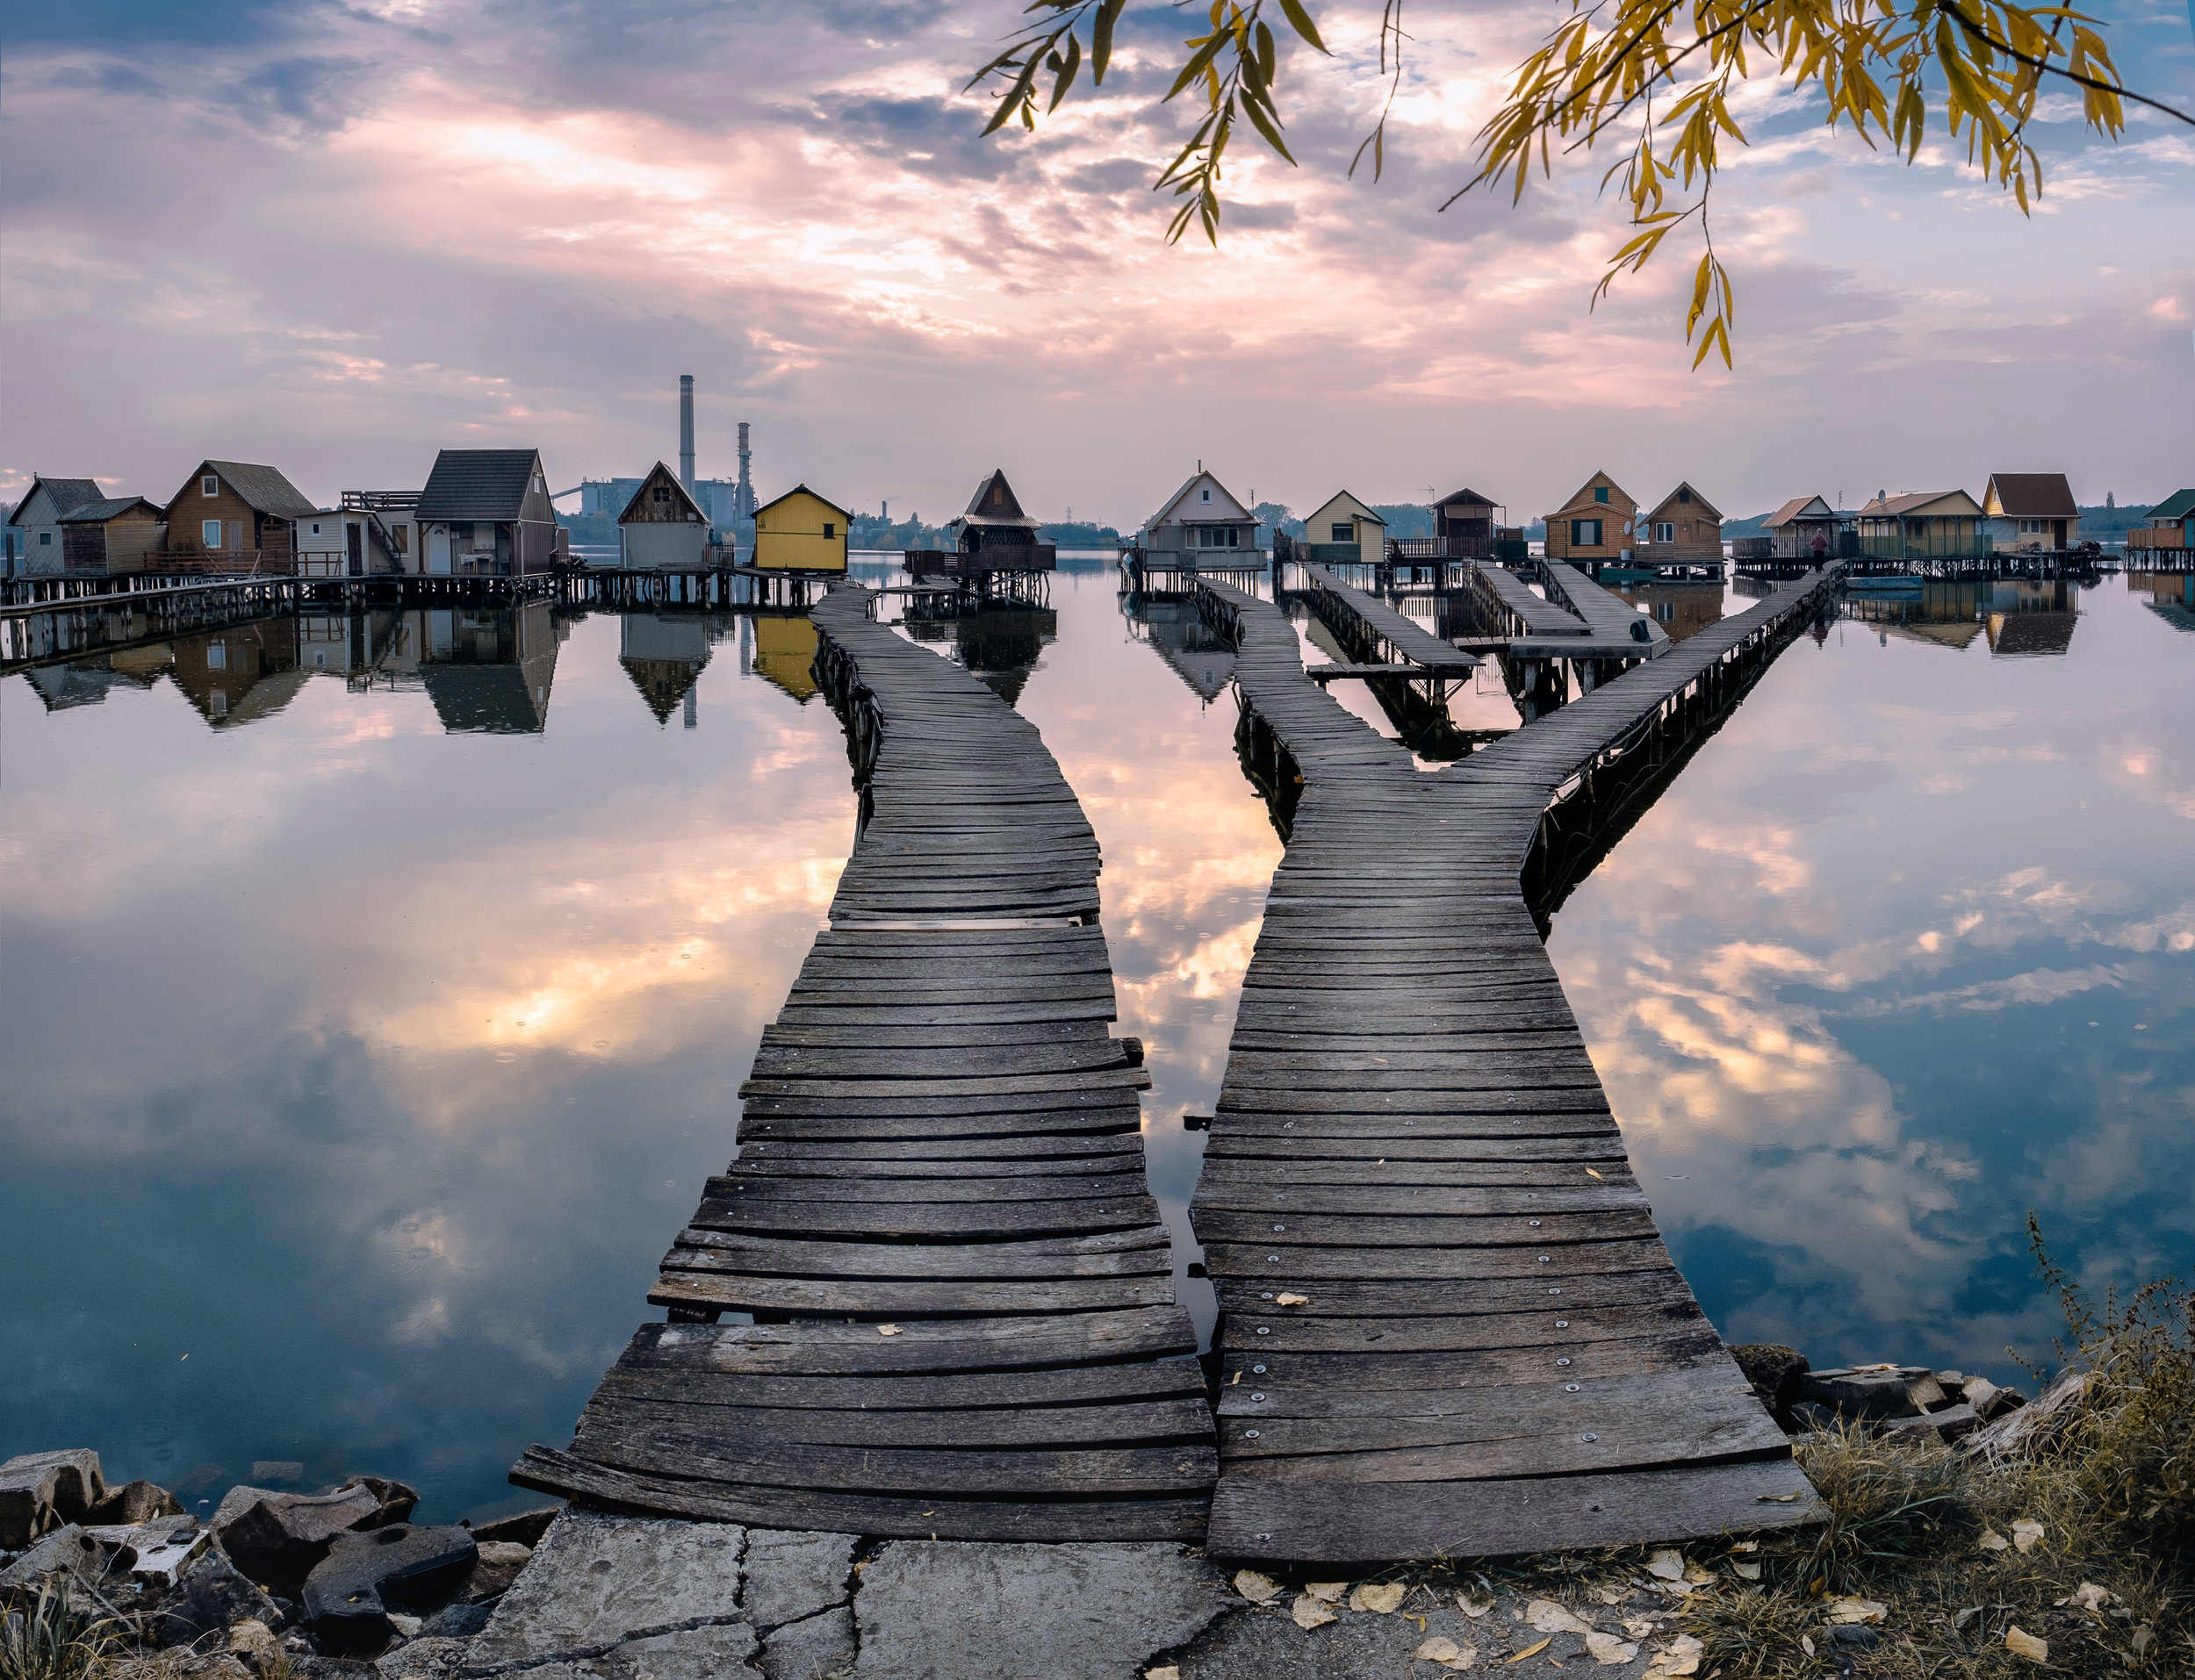 Stilt houses | Bokod Lake | Hungary 